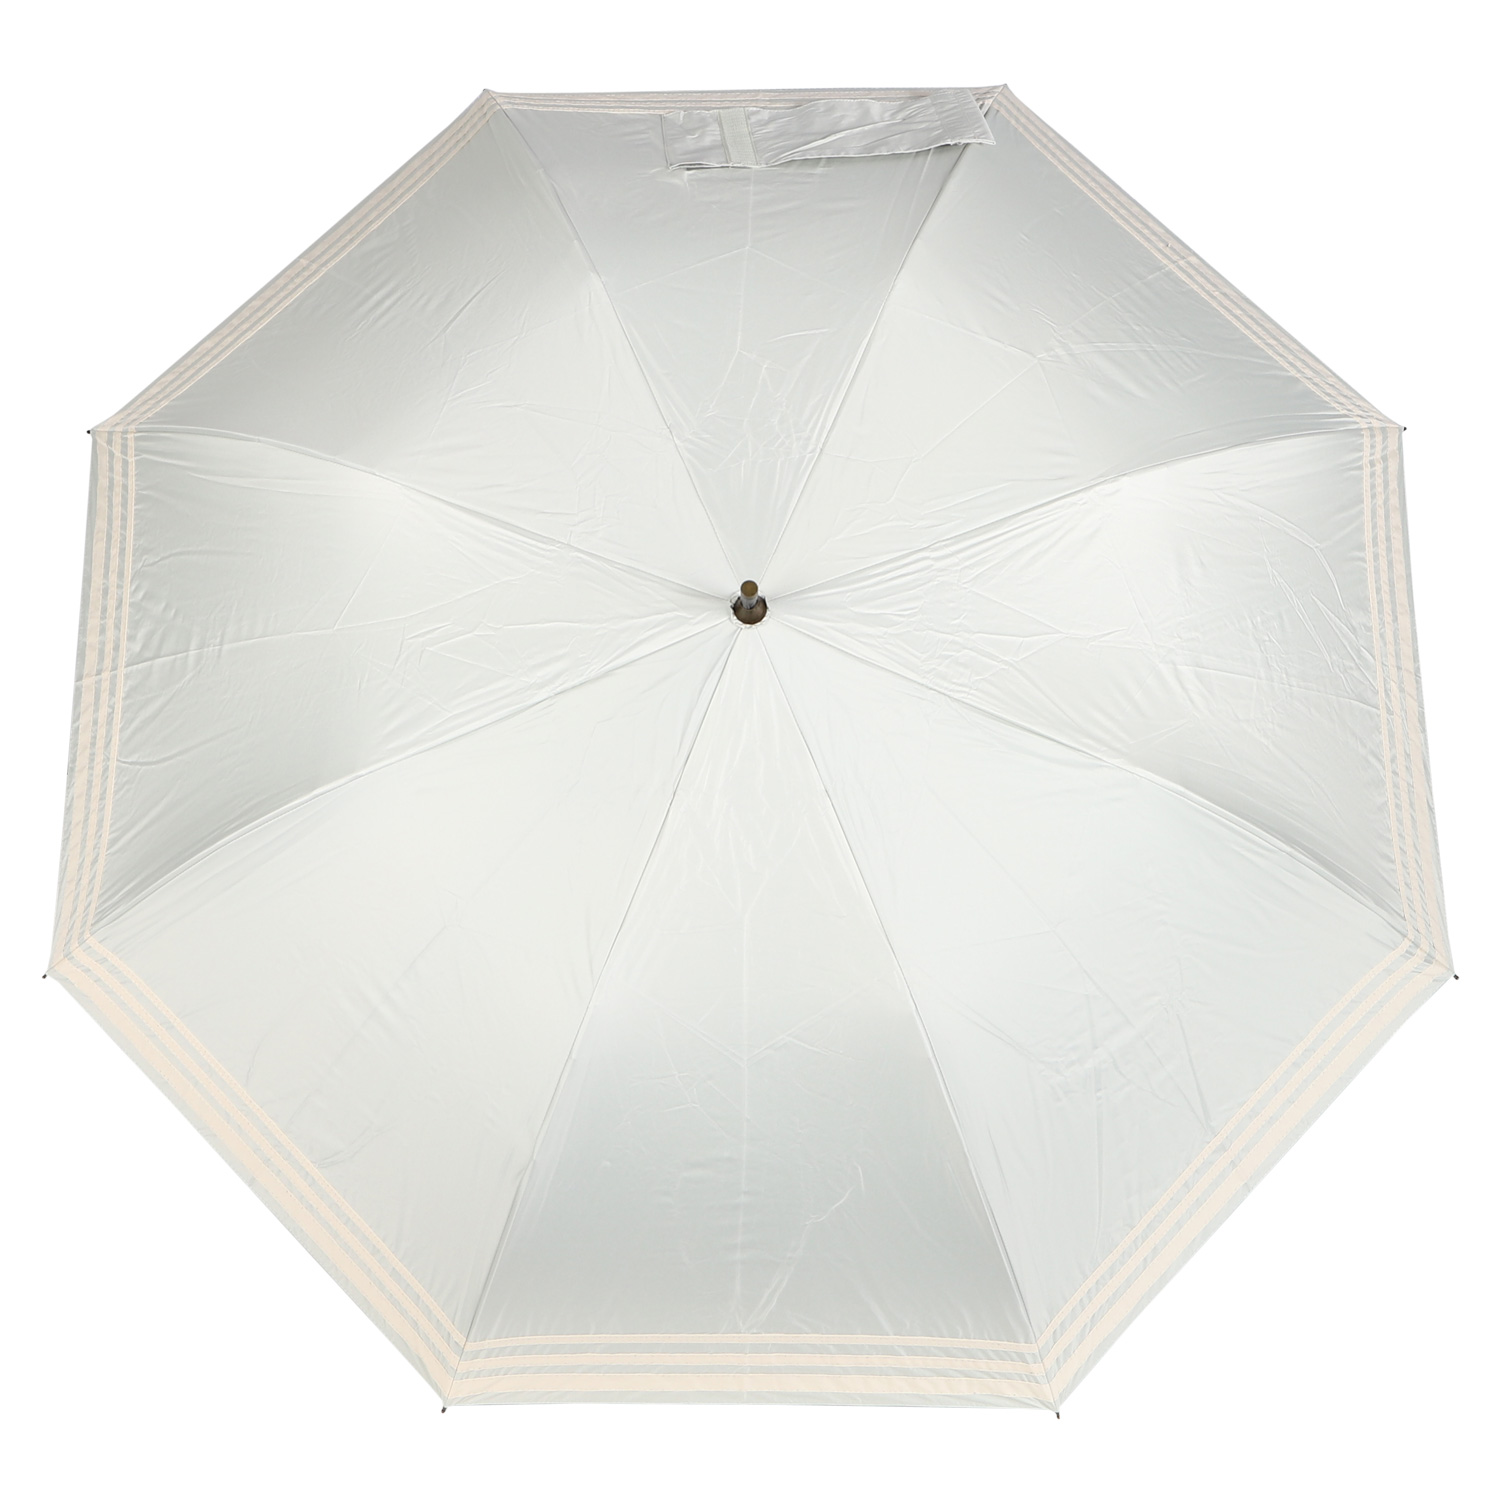 ヒュッゲ HYGGE 日傘 折りたたみ 完全遮光 晴雨兼用 軽量 ショートワイド傘 レディース UV...